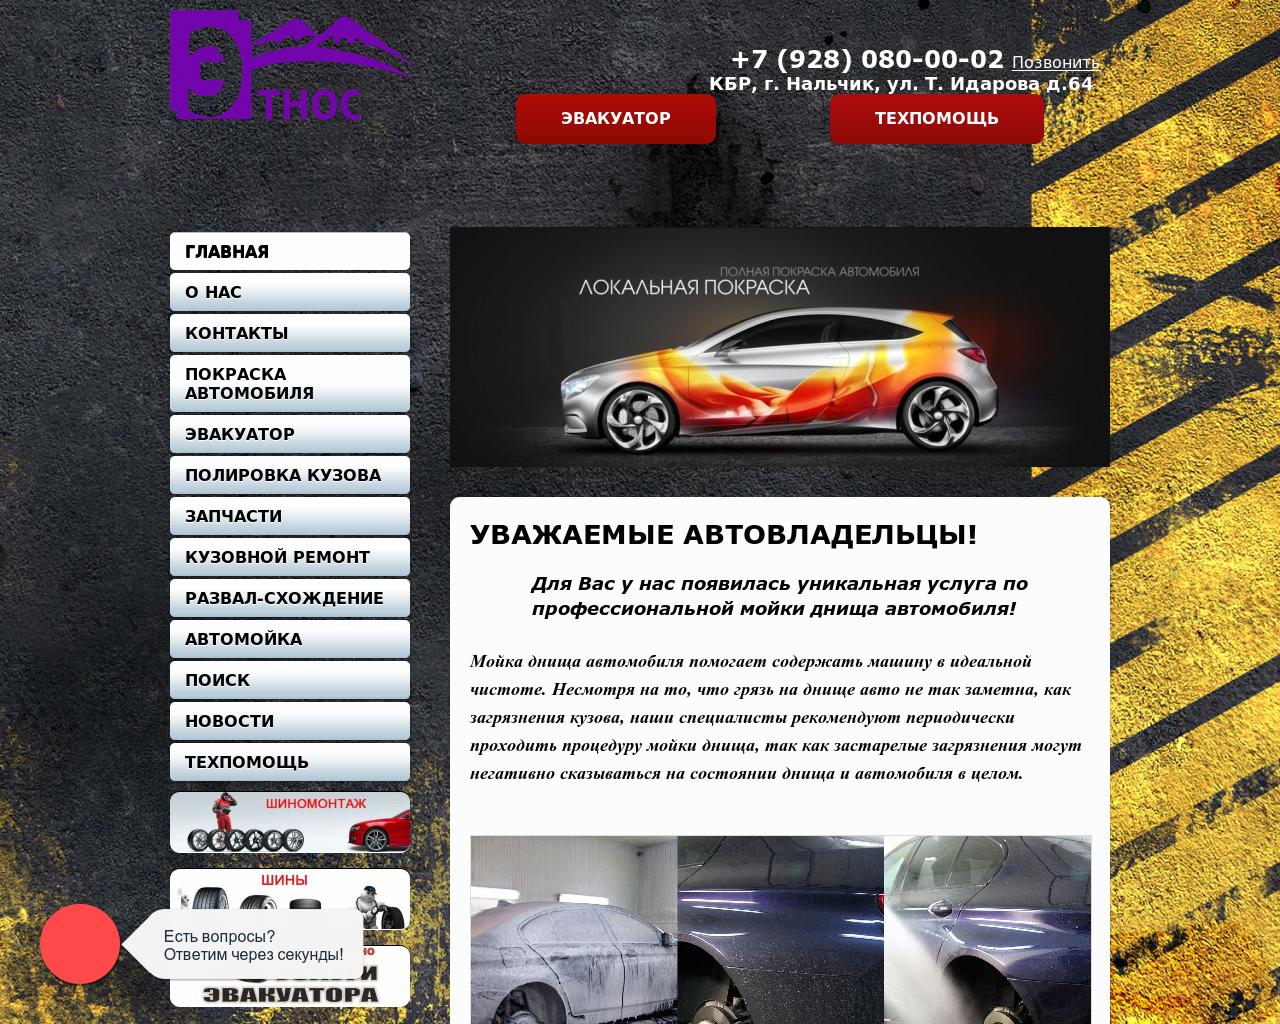 Изображение сайта etnos07.ru в разрешении 1280x1024